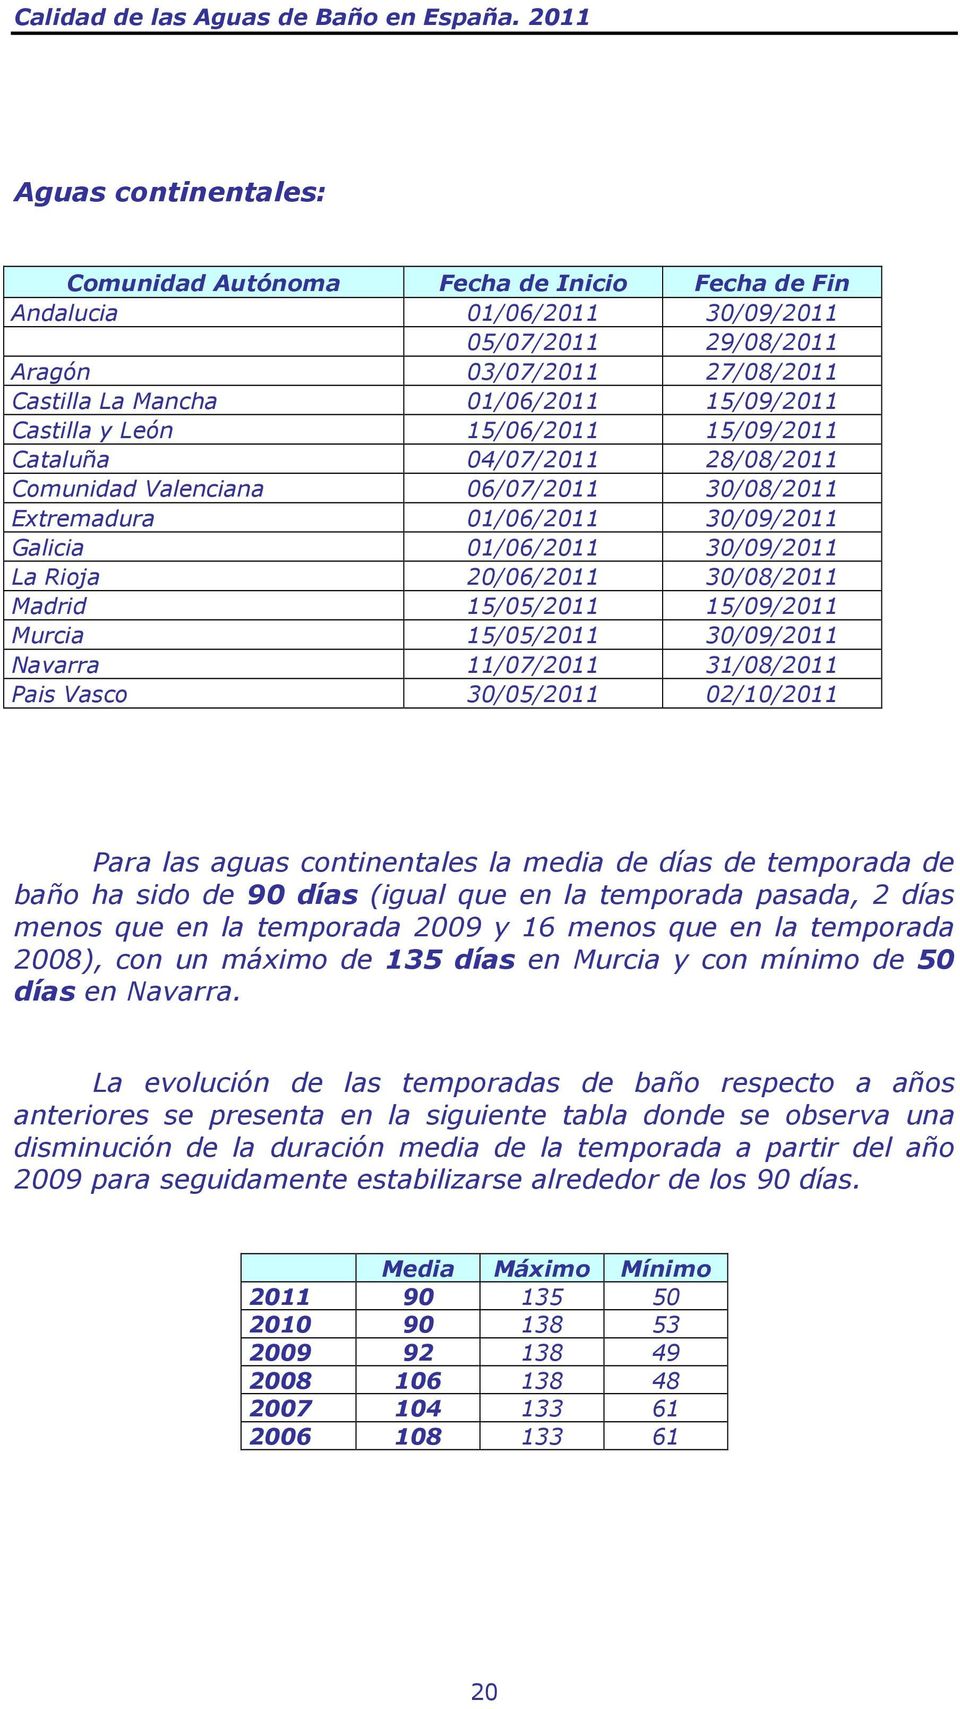 30/08/2011 Madrid 15/05/2011 15/09/2011 Murcia 15/05/2011 30/09/2011 Navarra 11/07/2011 31/08/2011 Pais Vasco 30/05/2011 02/10/2011 Para las aguas continentales la media de días de temporada de baño